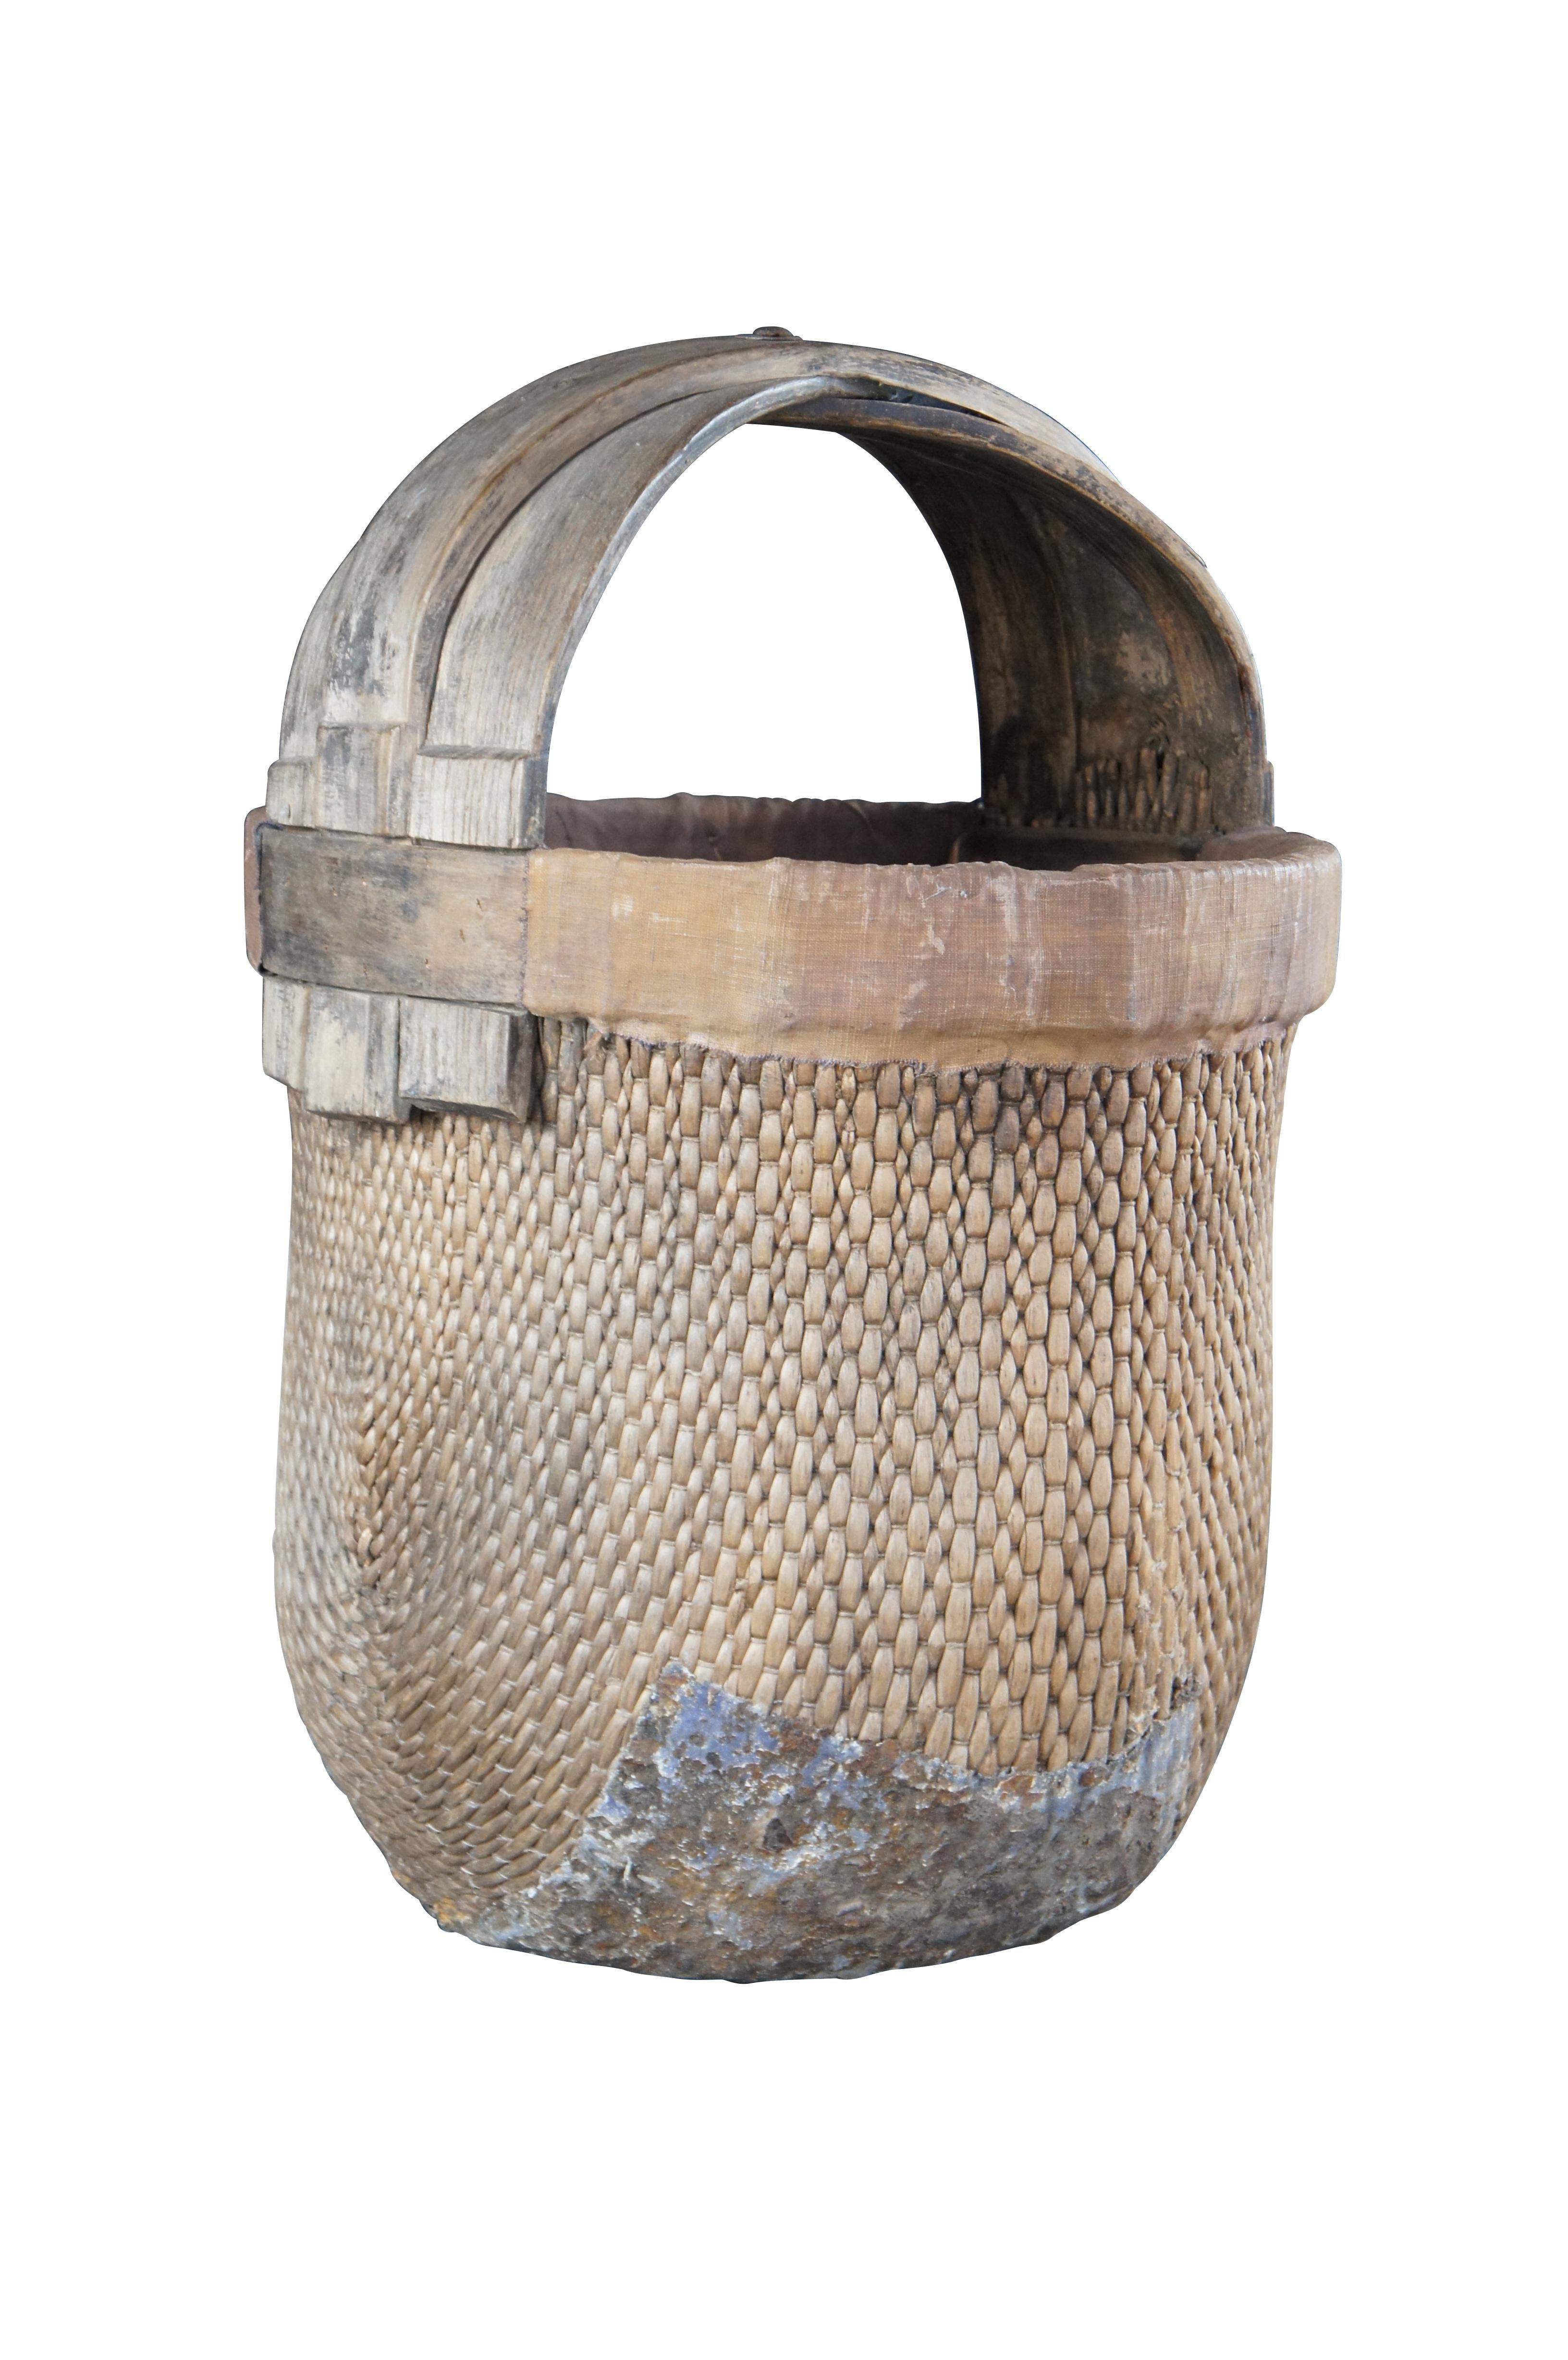 Chinesischer Reiskorb aus dem frühen 20. Jahrhundert. Aus geflochtenem Schilfrohr mit einem Griff aus Bugholz.

Abmessungen:
16